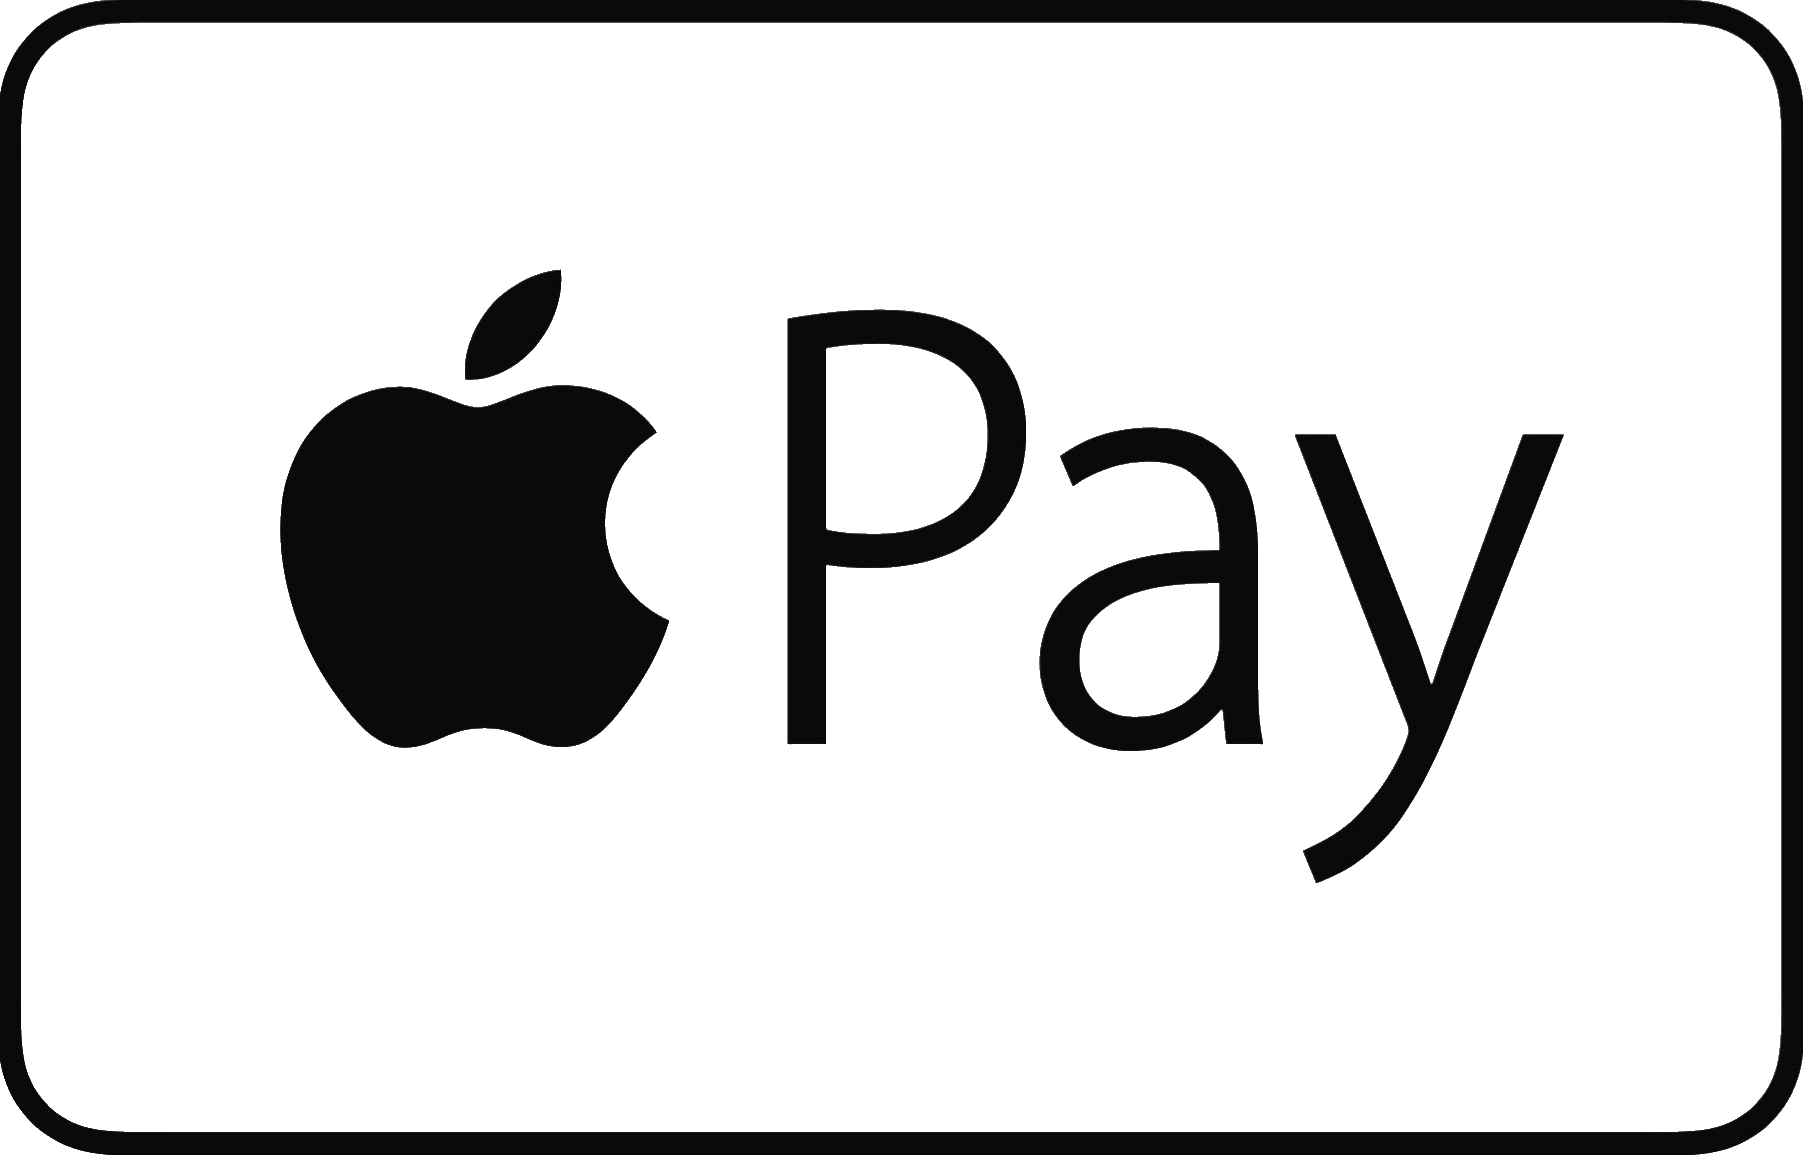 Удобный способ оплатить через платежный сервис PayKeeper с помощью Apple Pay